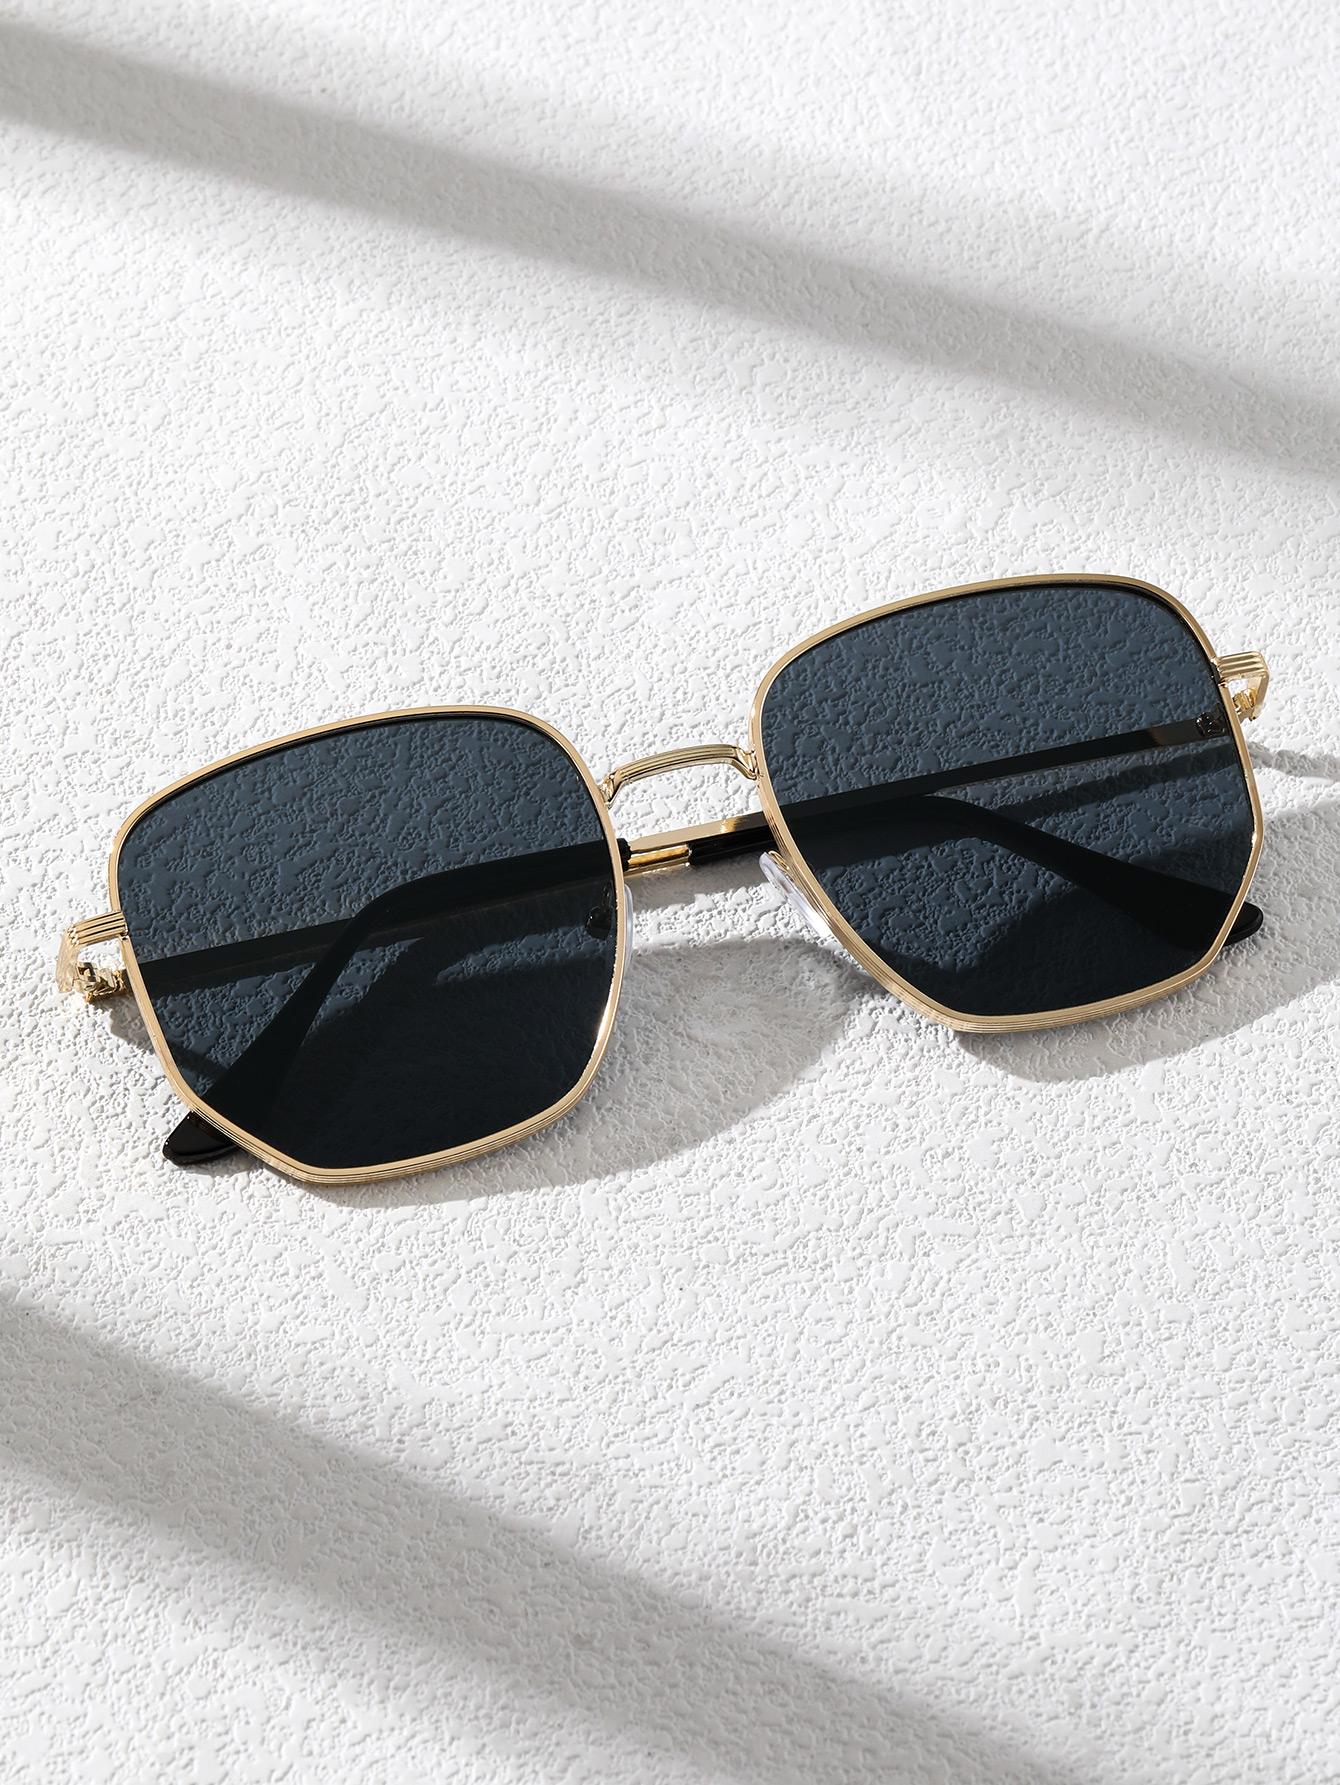 Модные очки в геометрической оправе с черными оттенками 1 пара женских модных очков в геометрической оправе в богемном стиле на лето